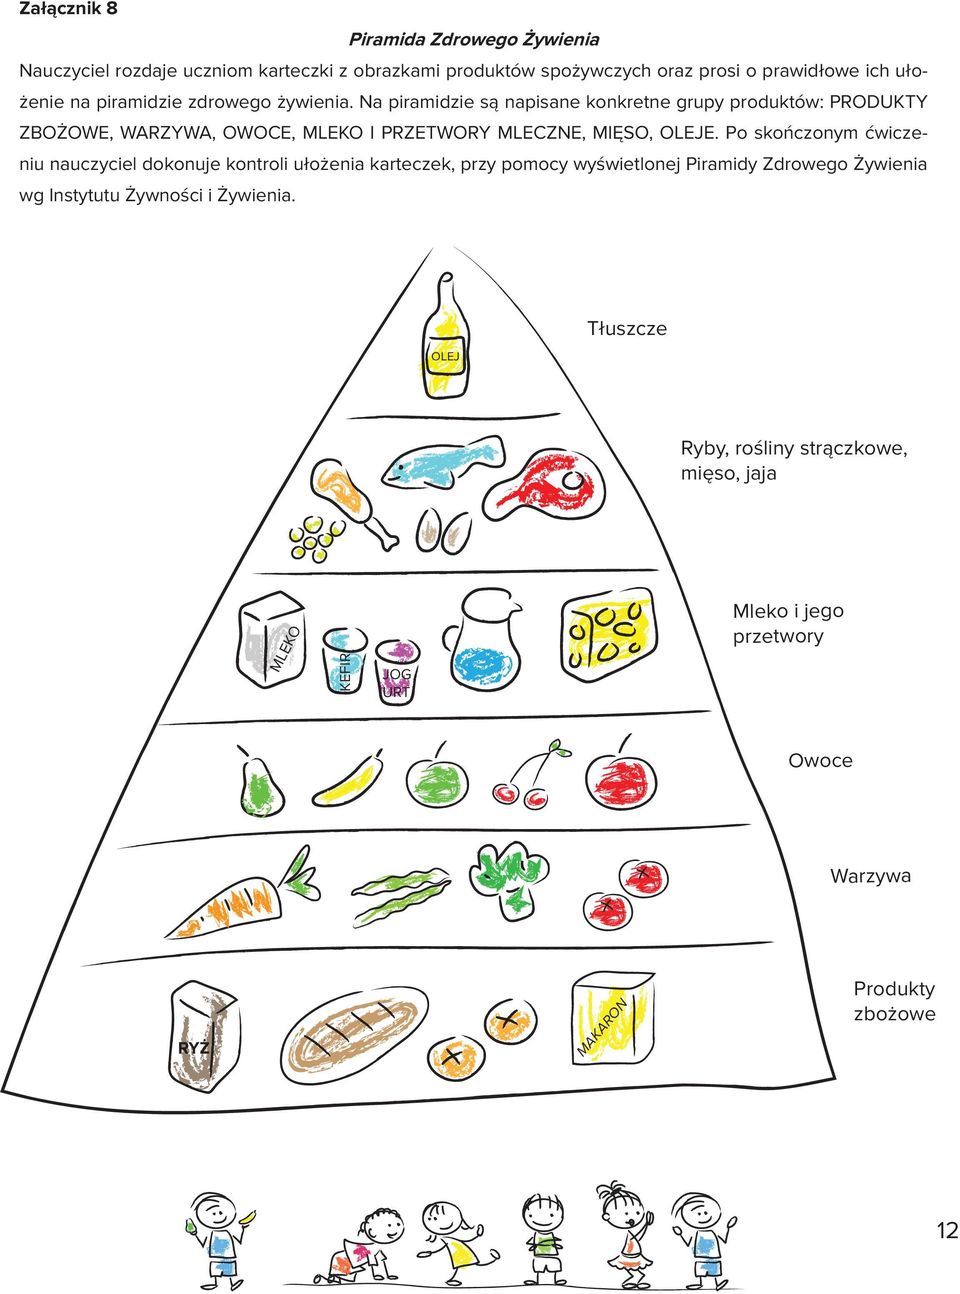 Na piramidzie są napisane konkretne grupy produktów: PRODUKTY ZBOŻOWE, WARZYWA, OWOCE, MLEKO I PRZETWORY MLECZNE, MIĘSO, OLEJE.